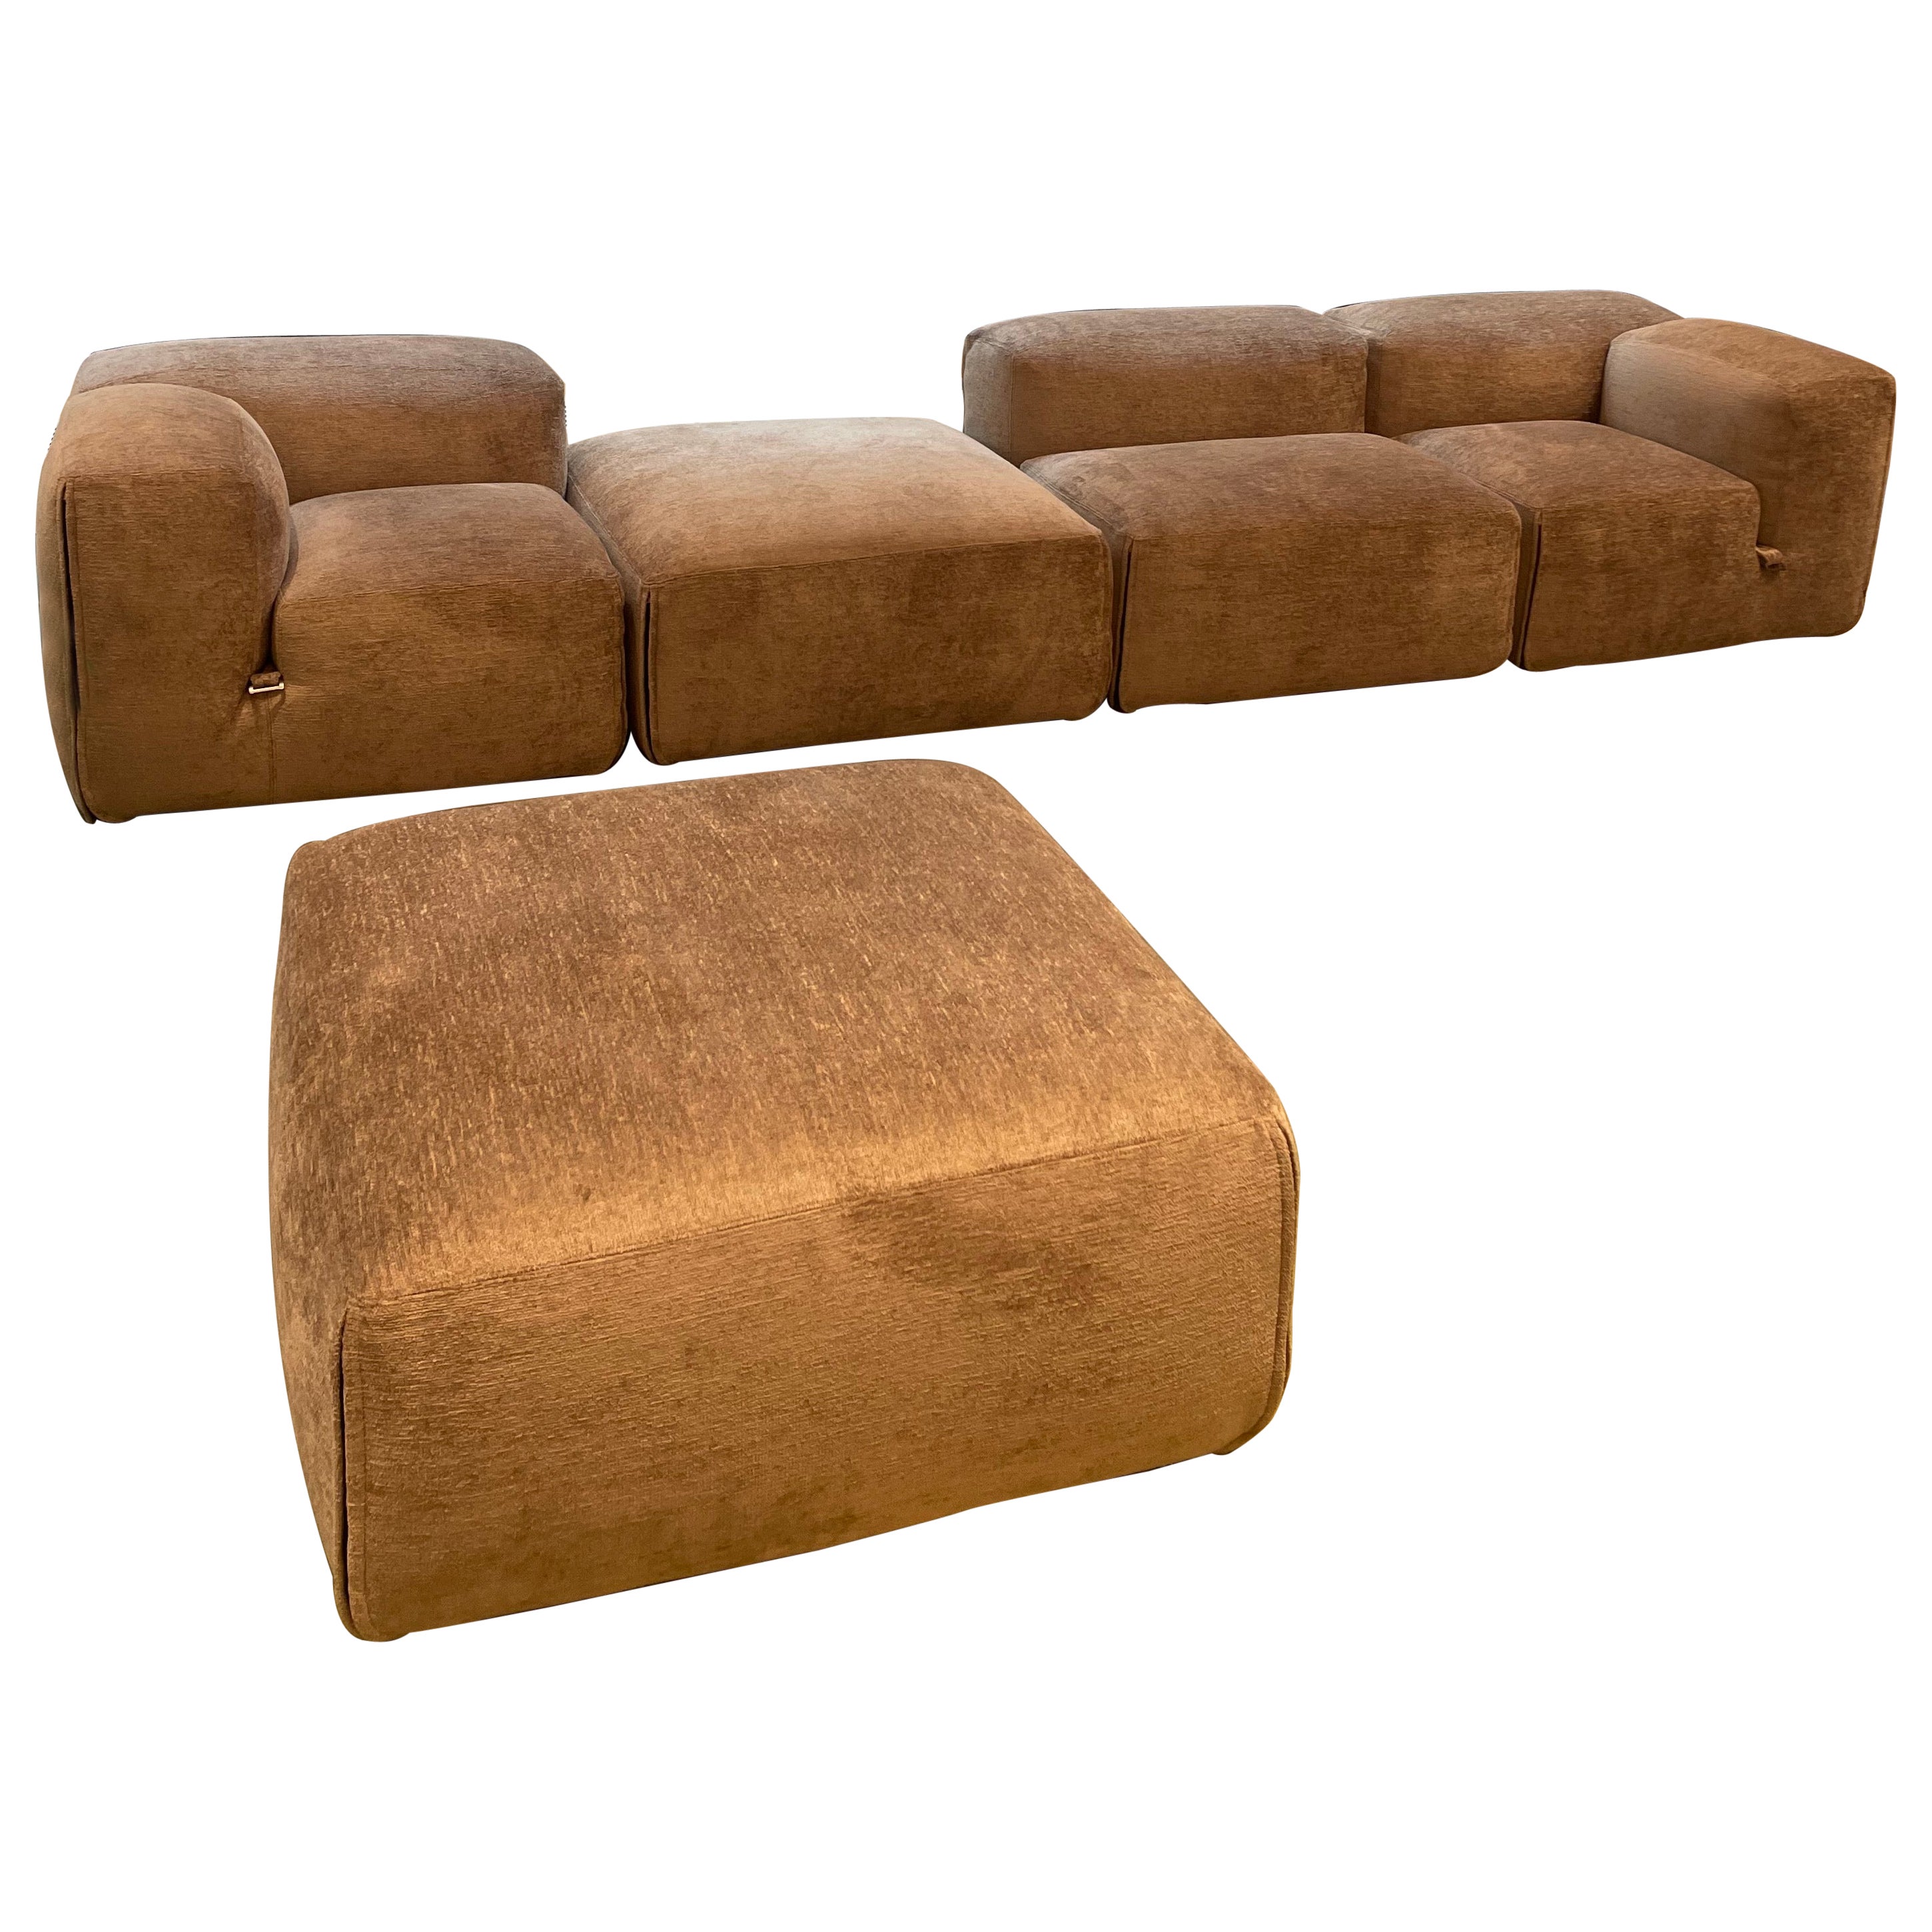  New Tacchini Le Mura Sofa Designed by Mario Bellini in STOCK